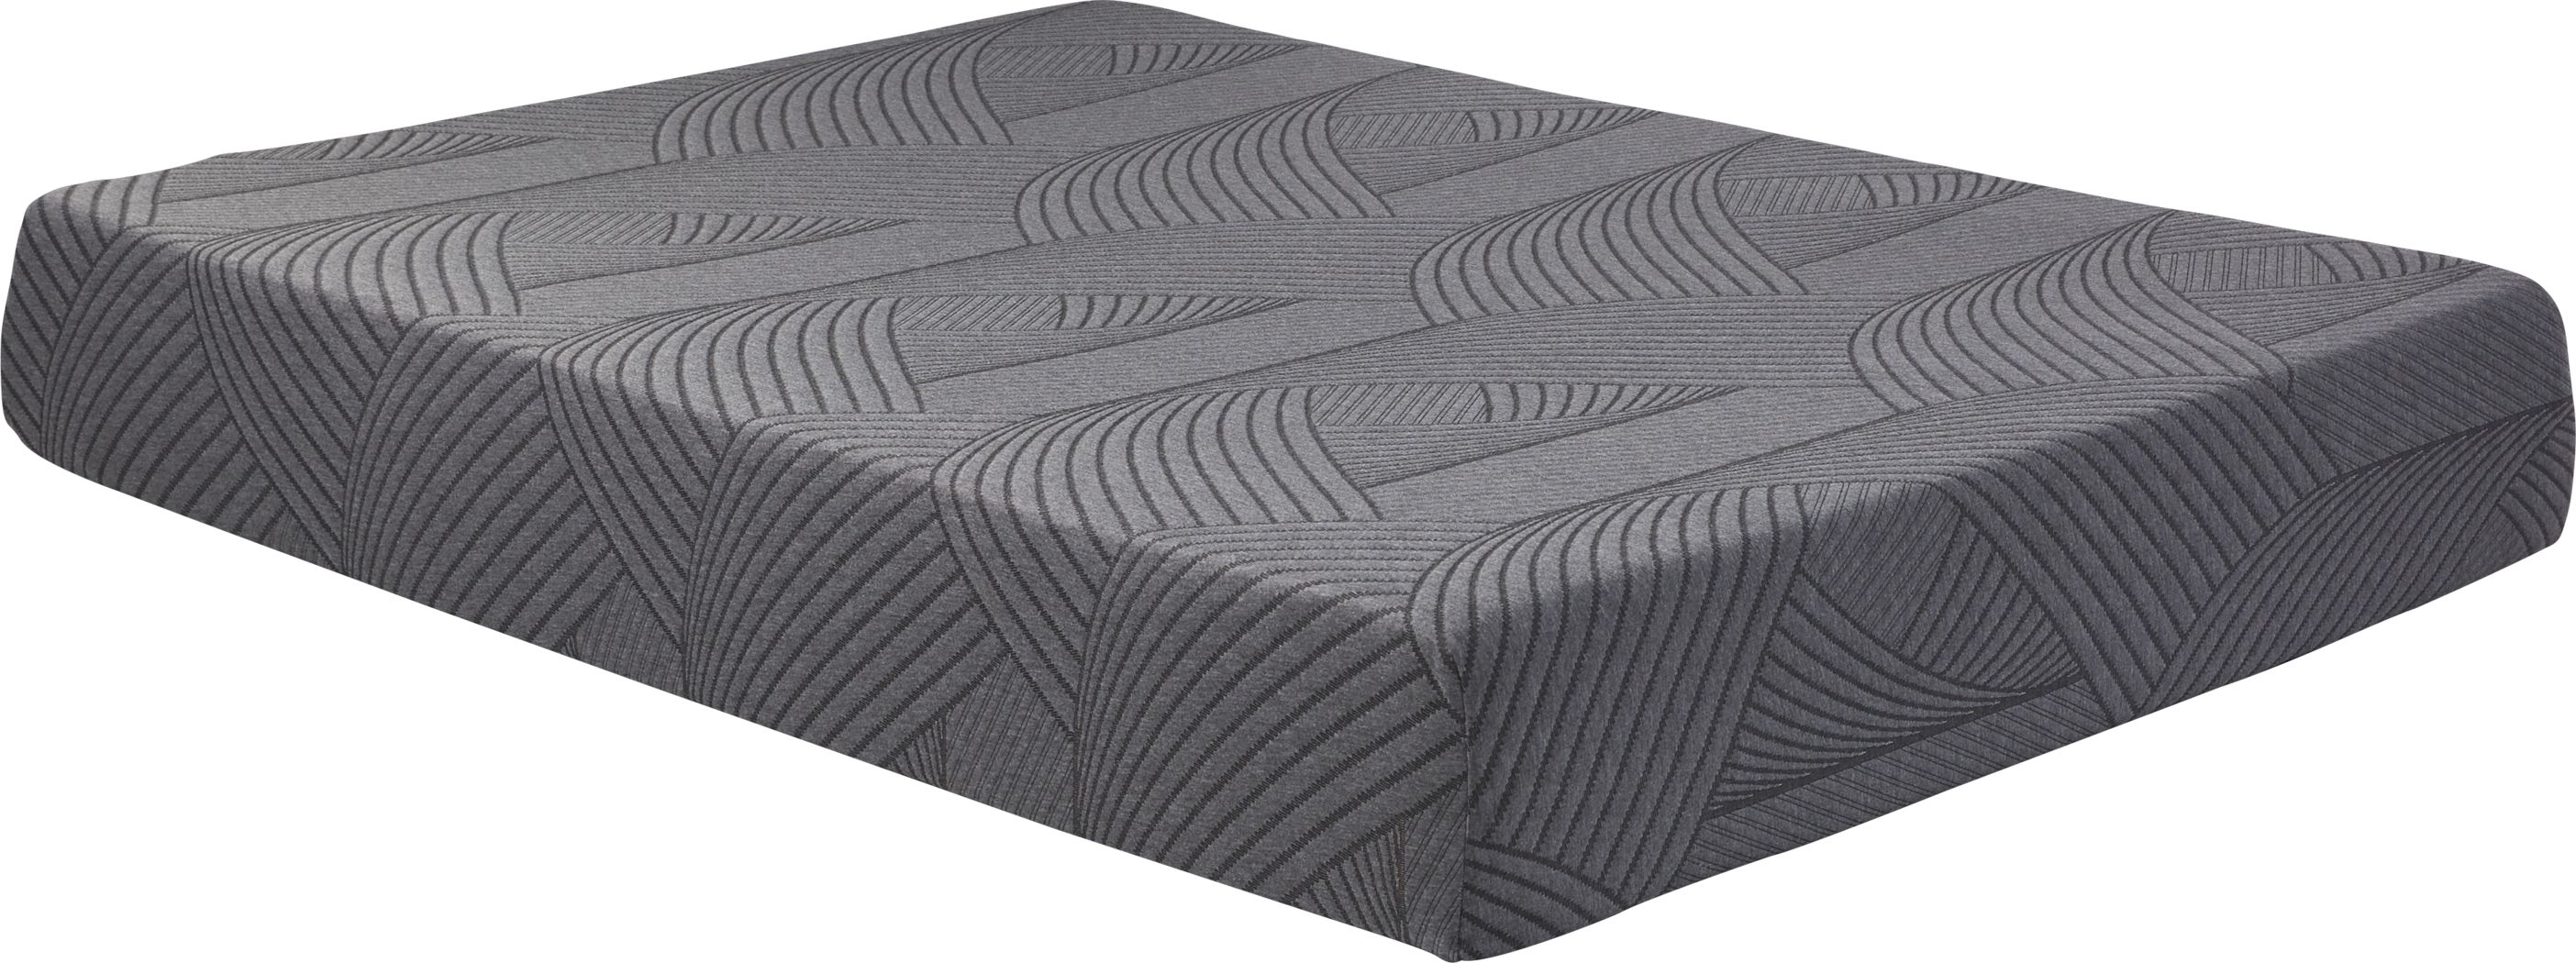 10 twin mattress sheet set